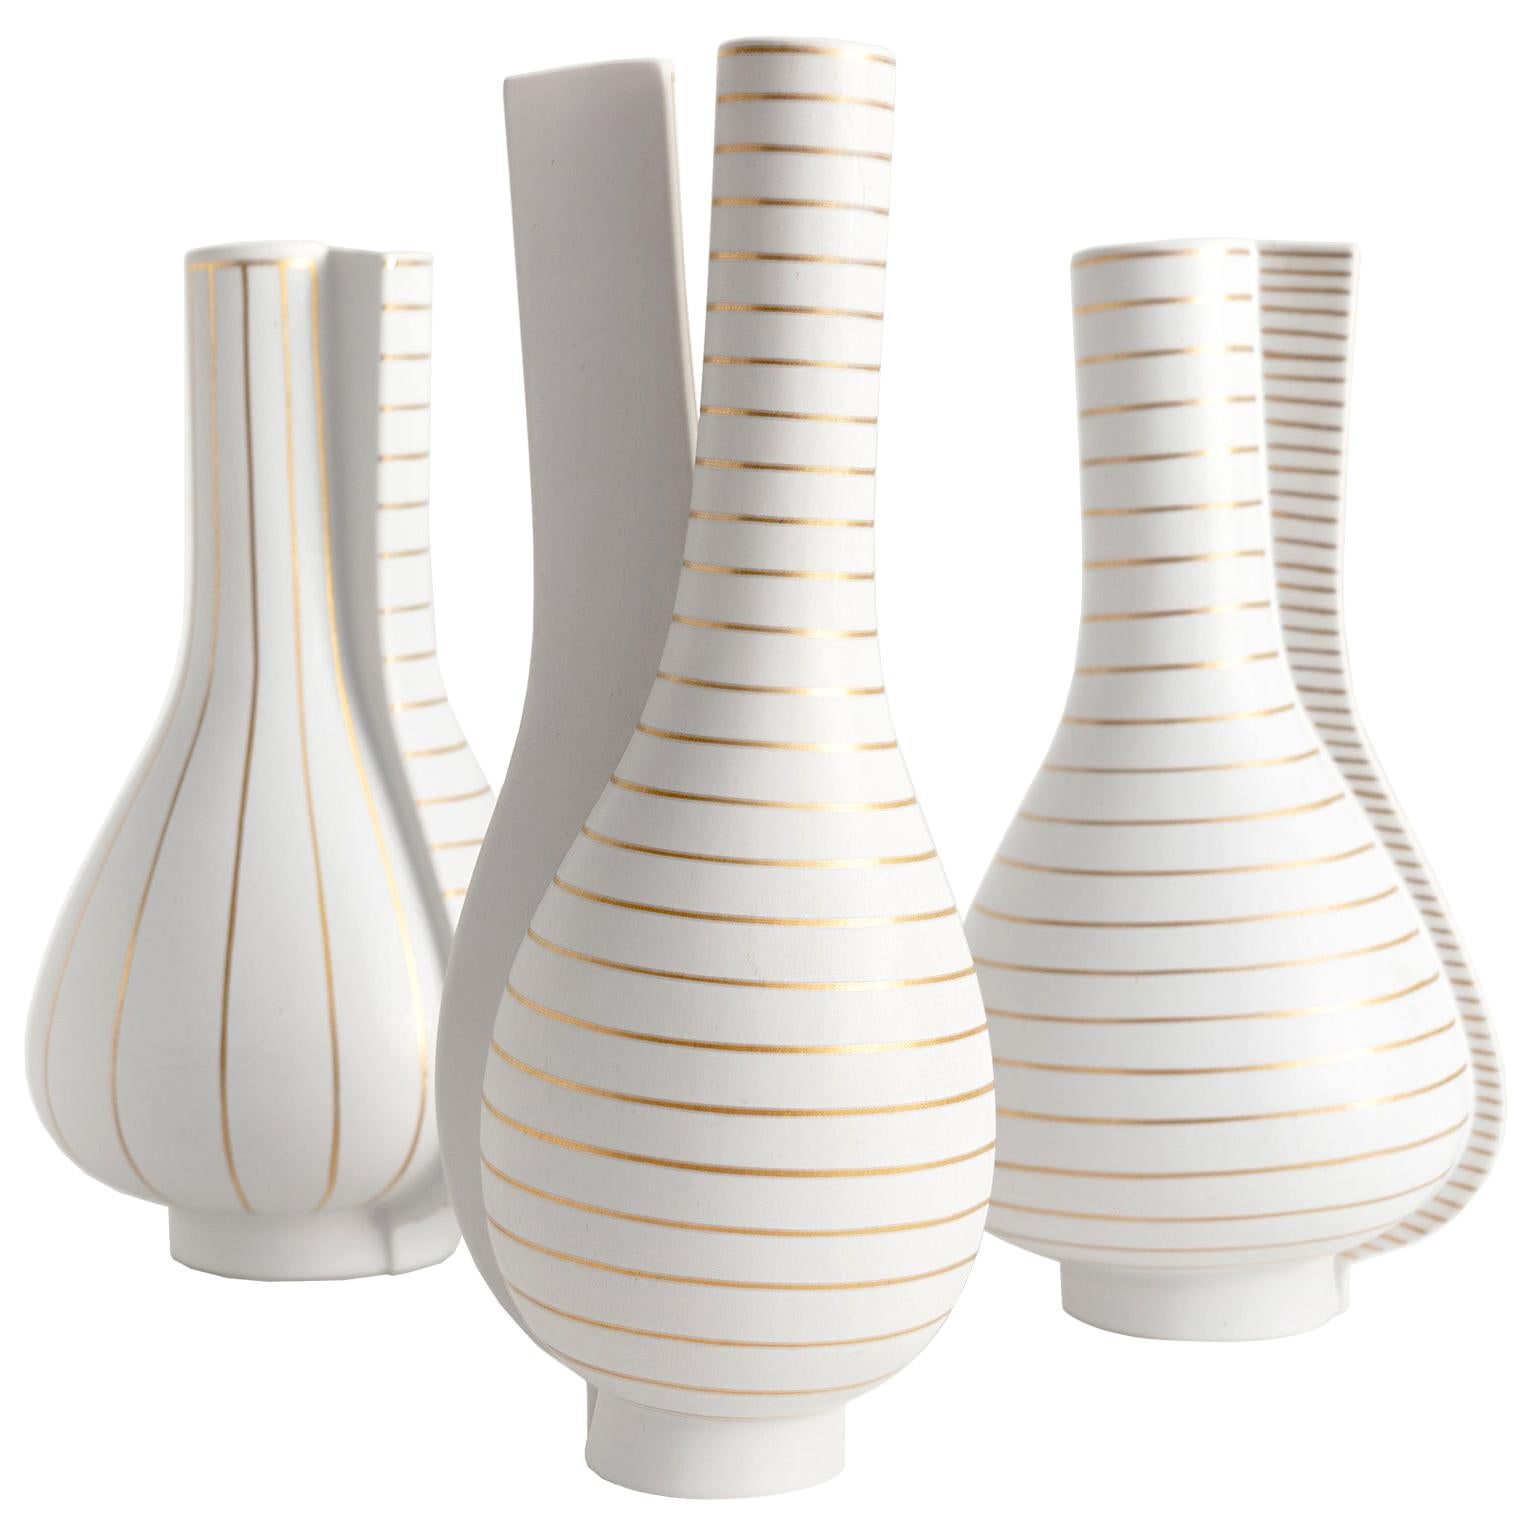 Group of 3 Surrea Series Vases Designed by Wilhelm Kåge for Gustavsberg